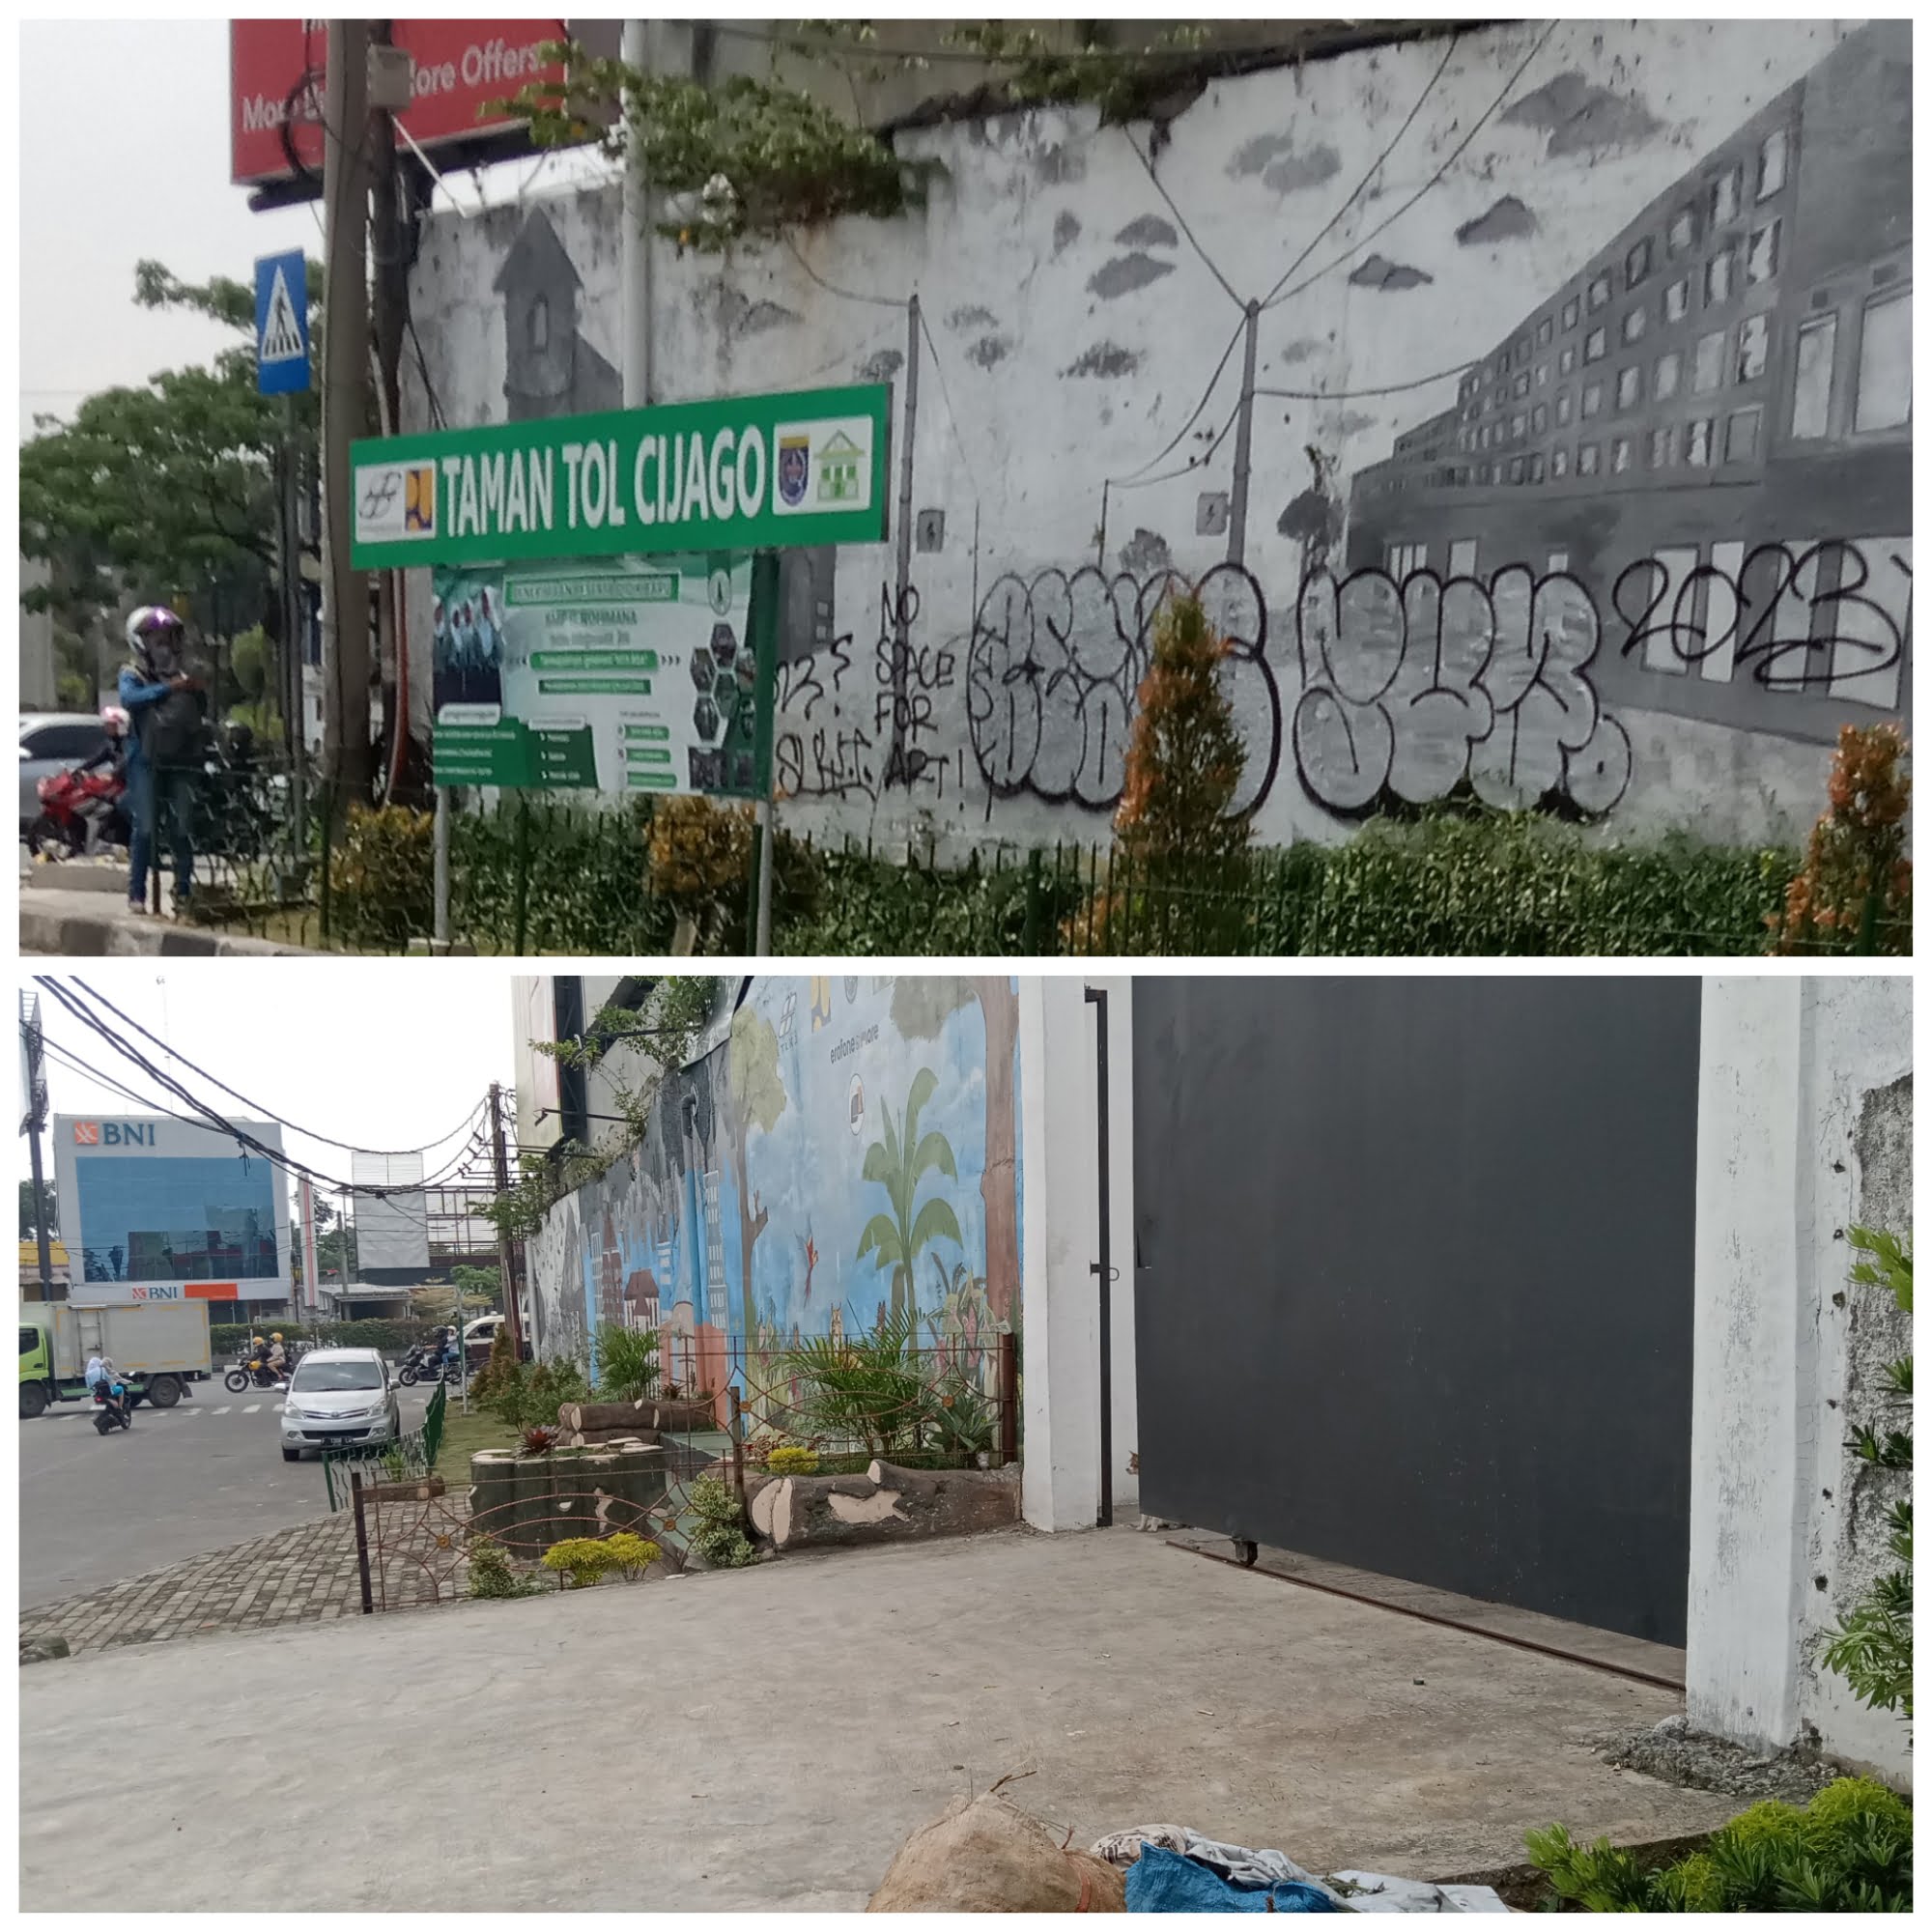 Lahan Taman Tol Cijago Sebagian di Pangkas Akses Jalan Pintu Samping Gedung Erafone Margonda Depok